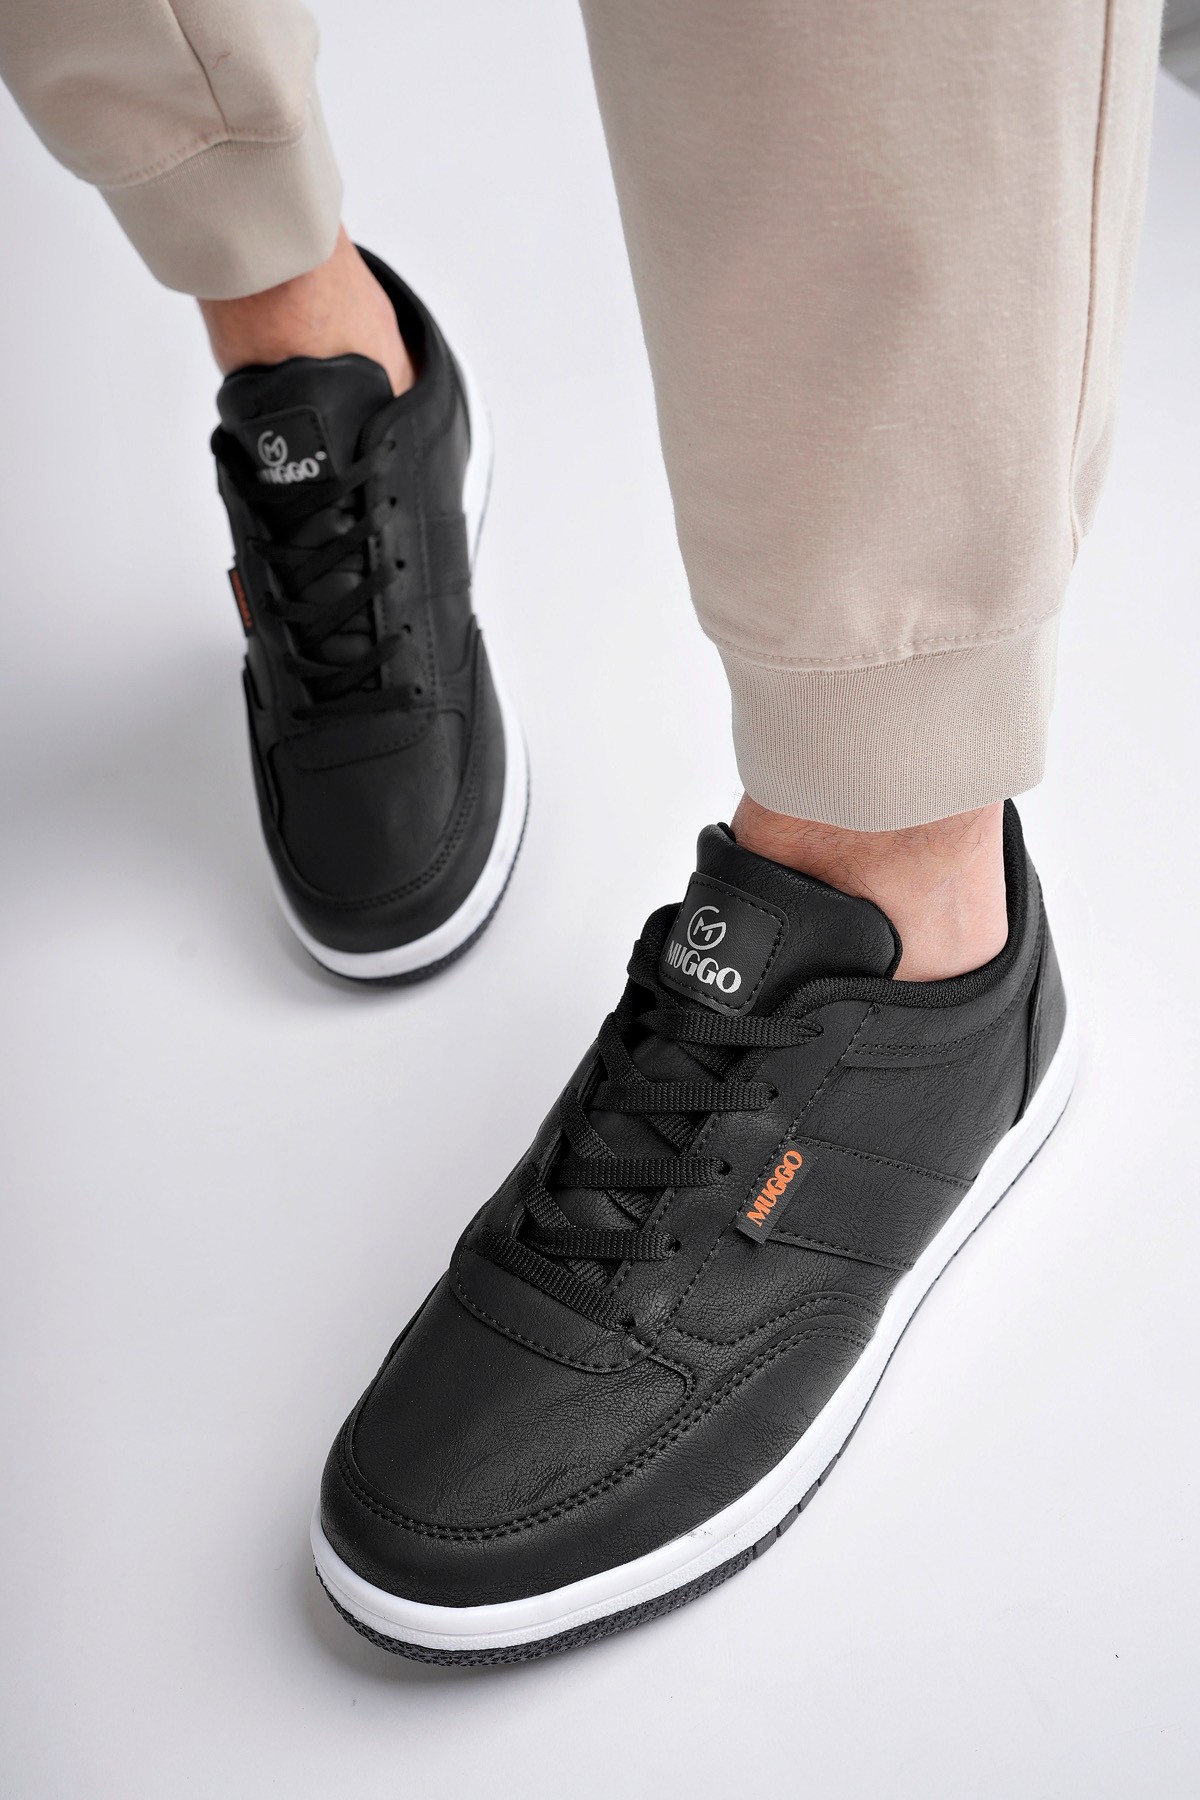 Muggo JOEL Garantili Erkek Günlük Casual Bağcıklı Sneaker Spor Ayakkabı - SİYAH- BEYAZ